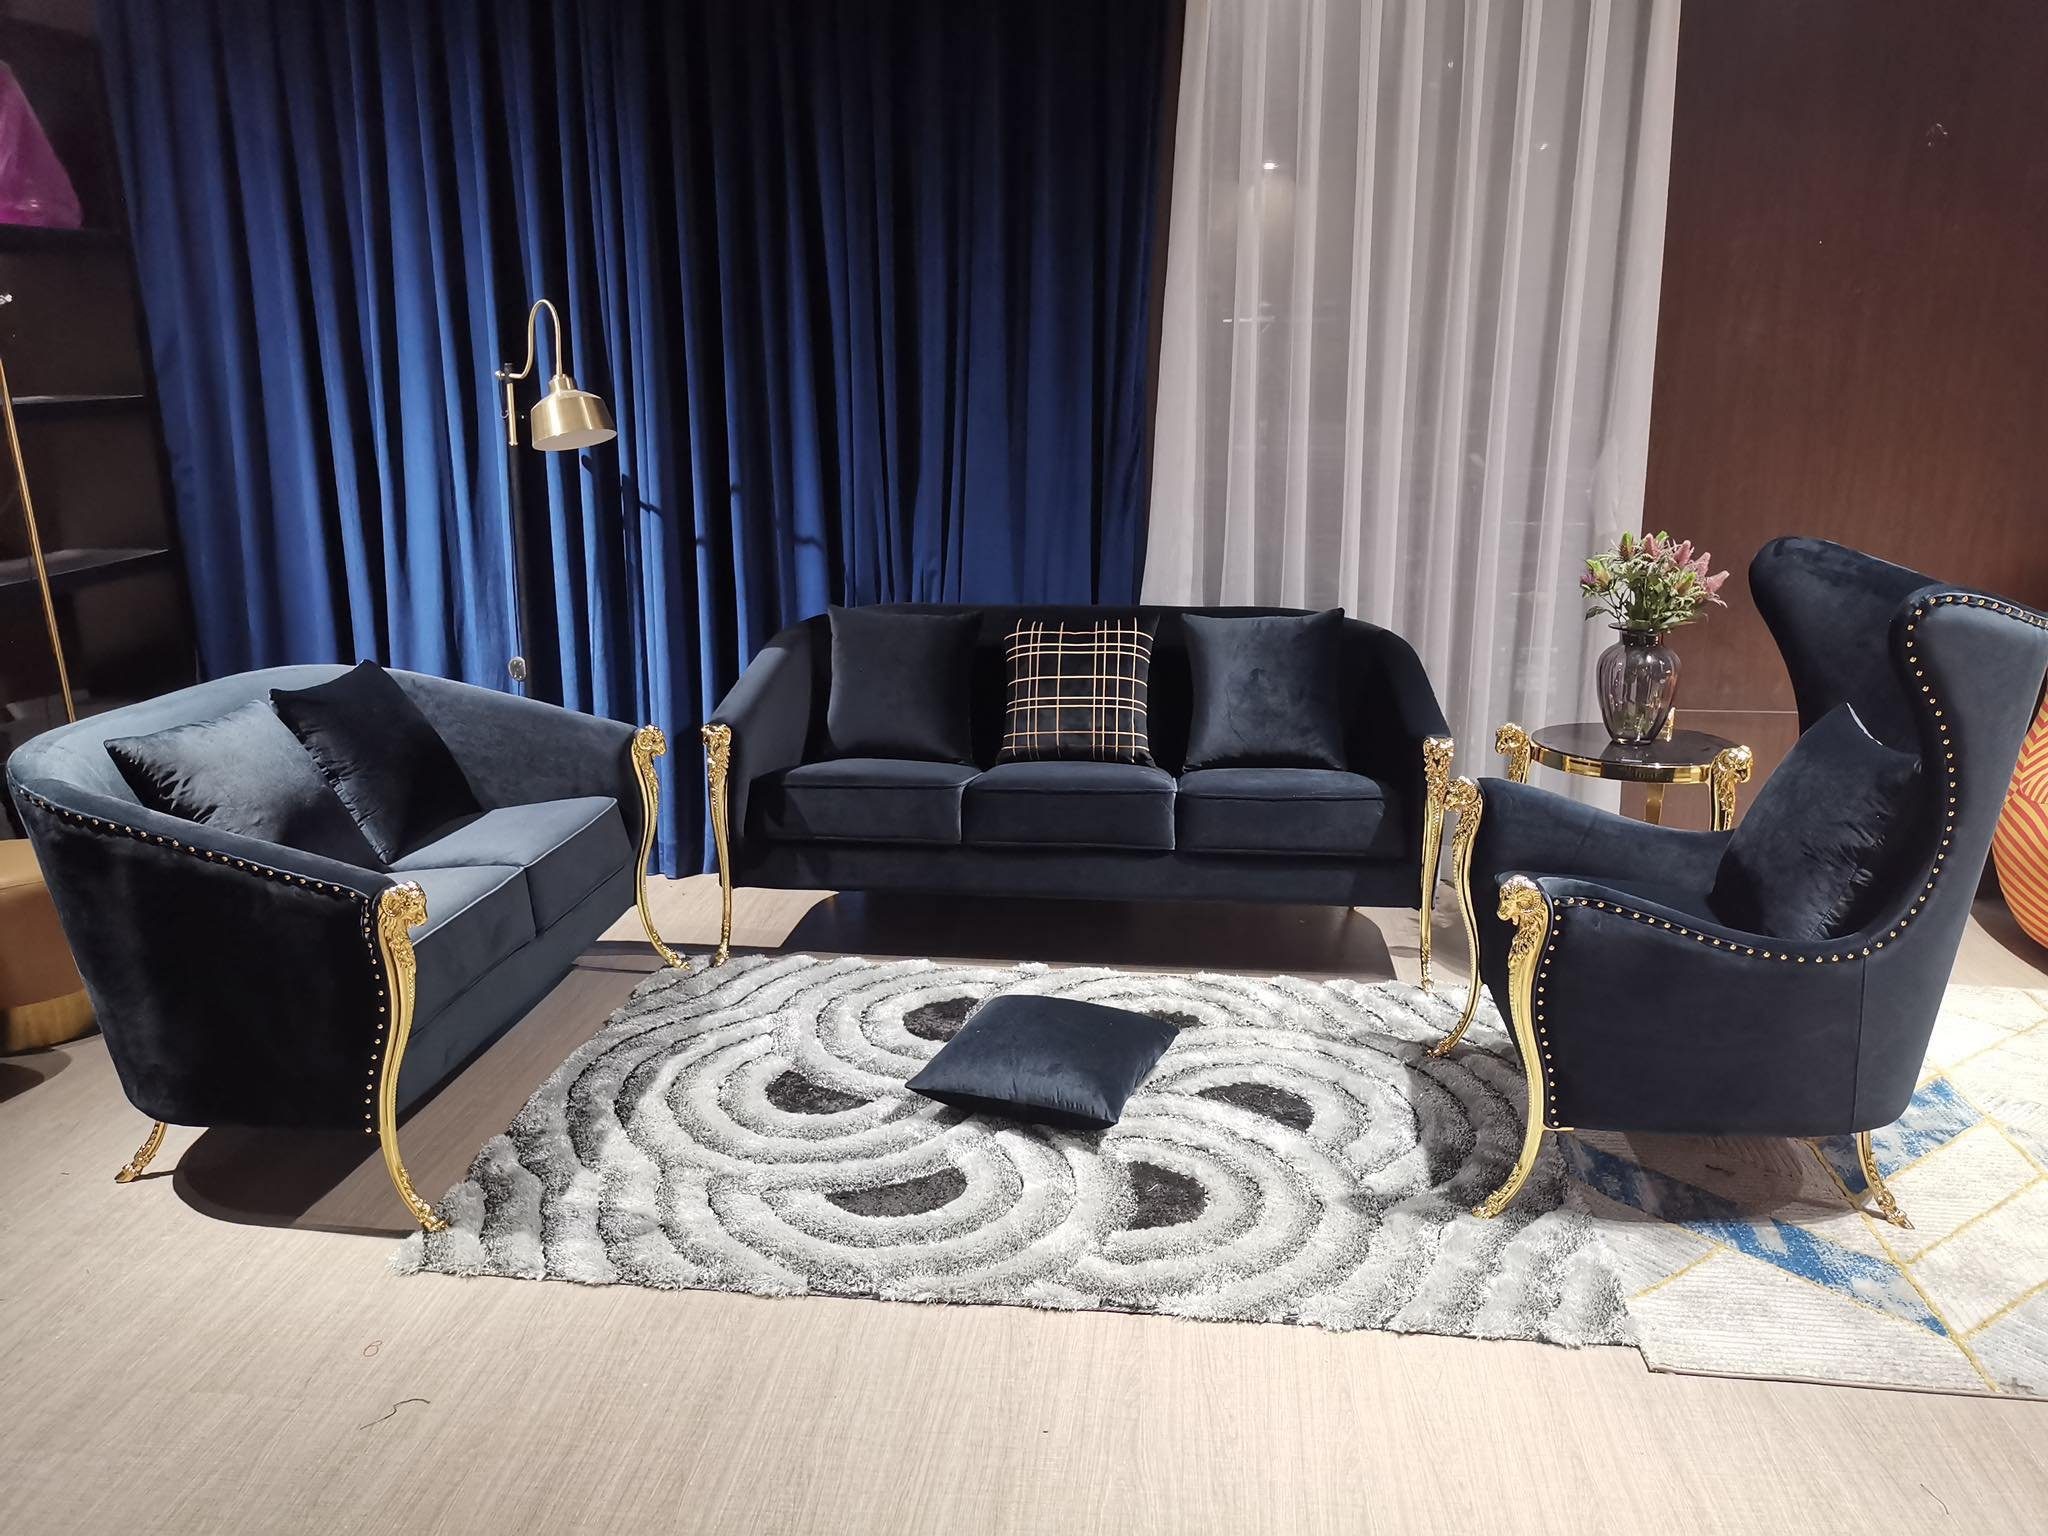 JVmoebel 3-Sitzer, Design 3 Sitzer Relax Sofas Club Lounge Sofa Textil Polster Schwarz